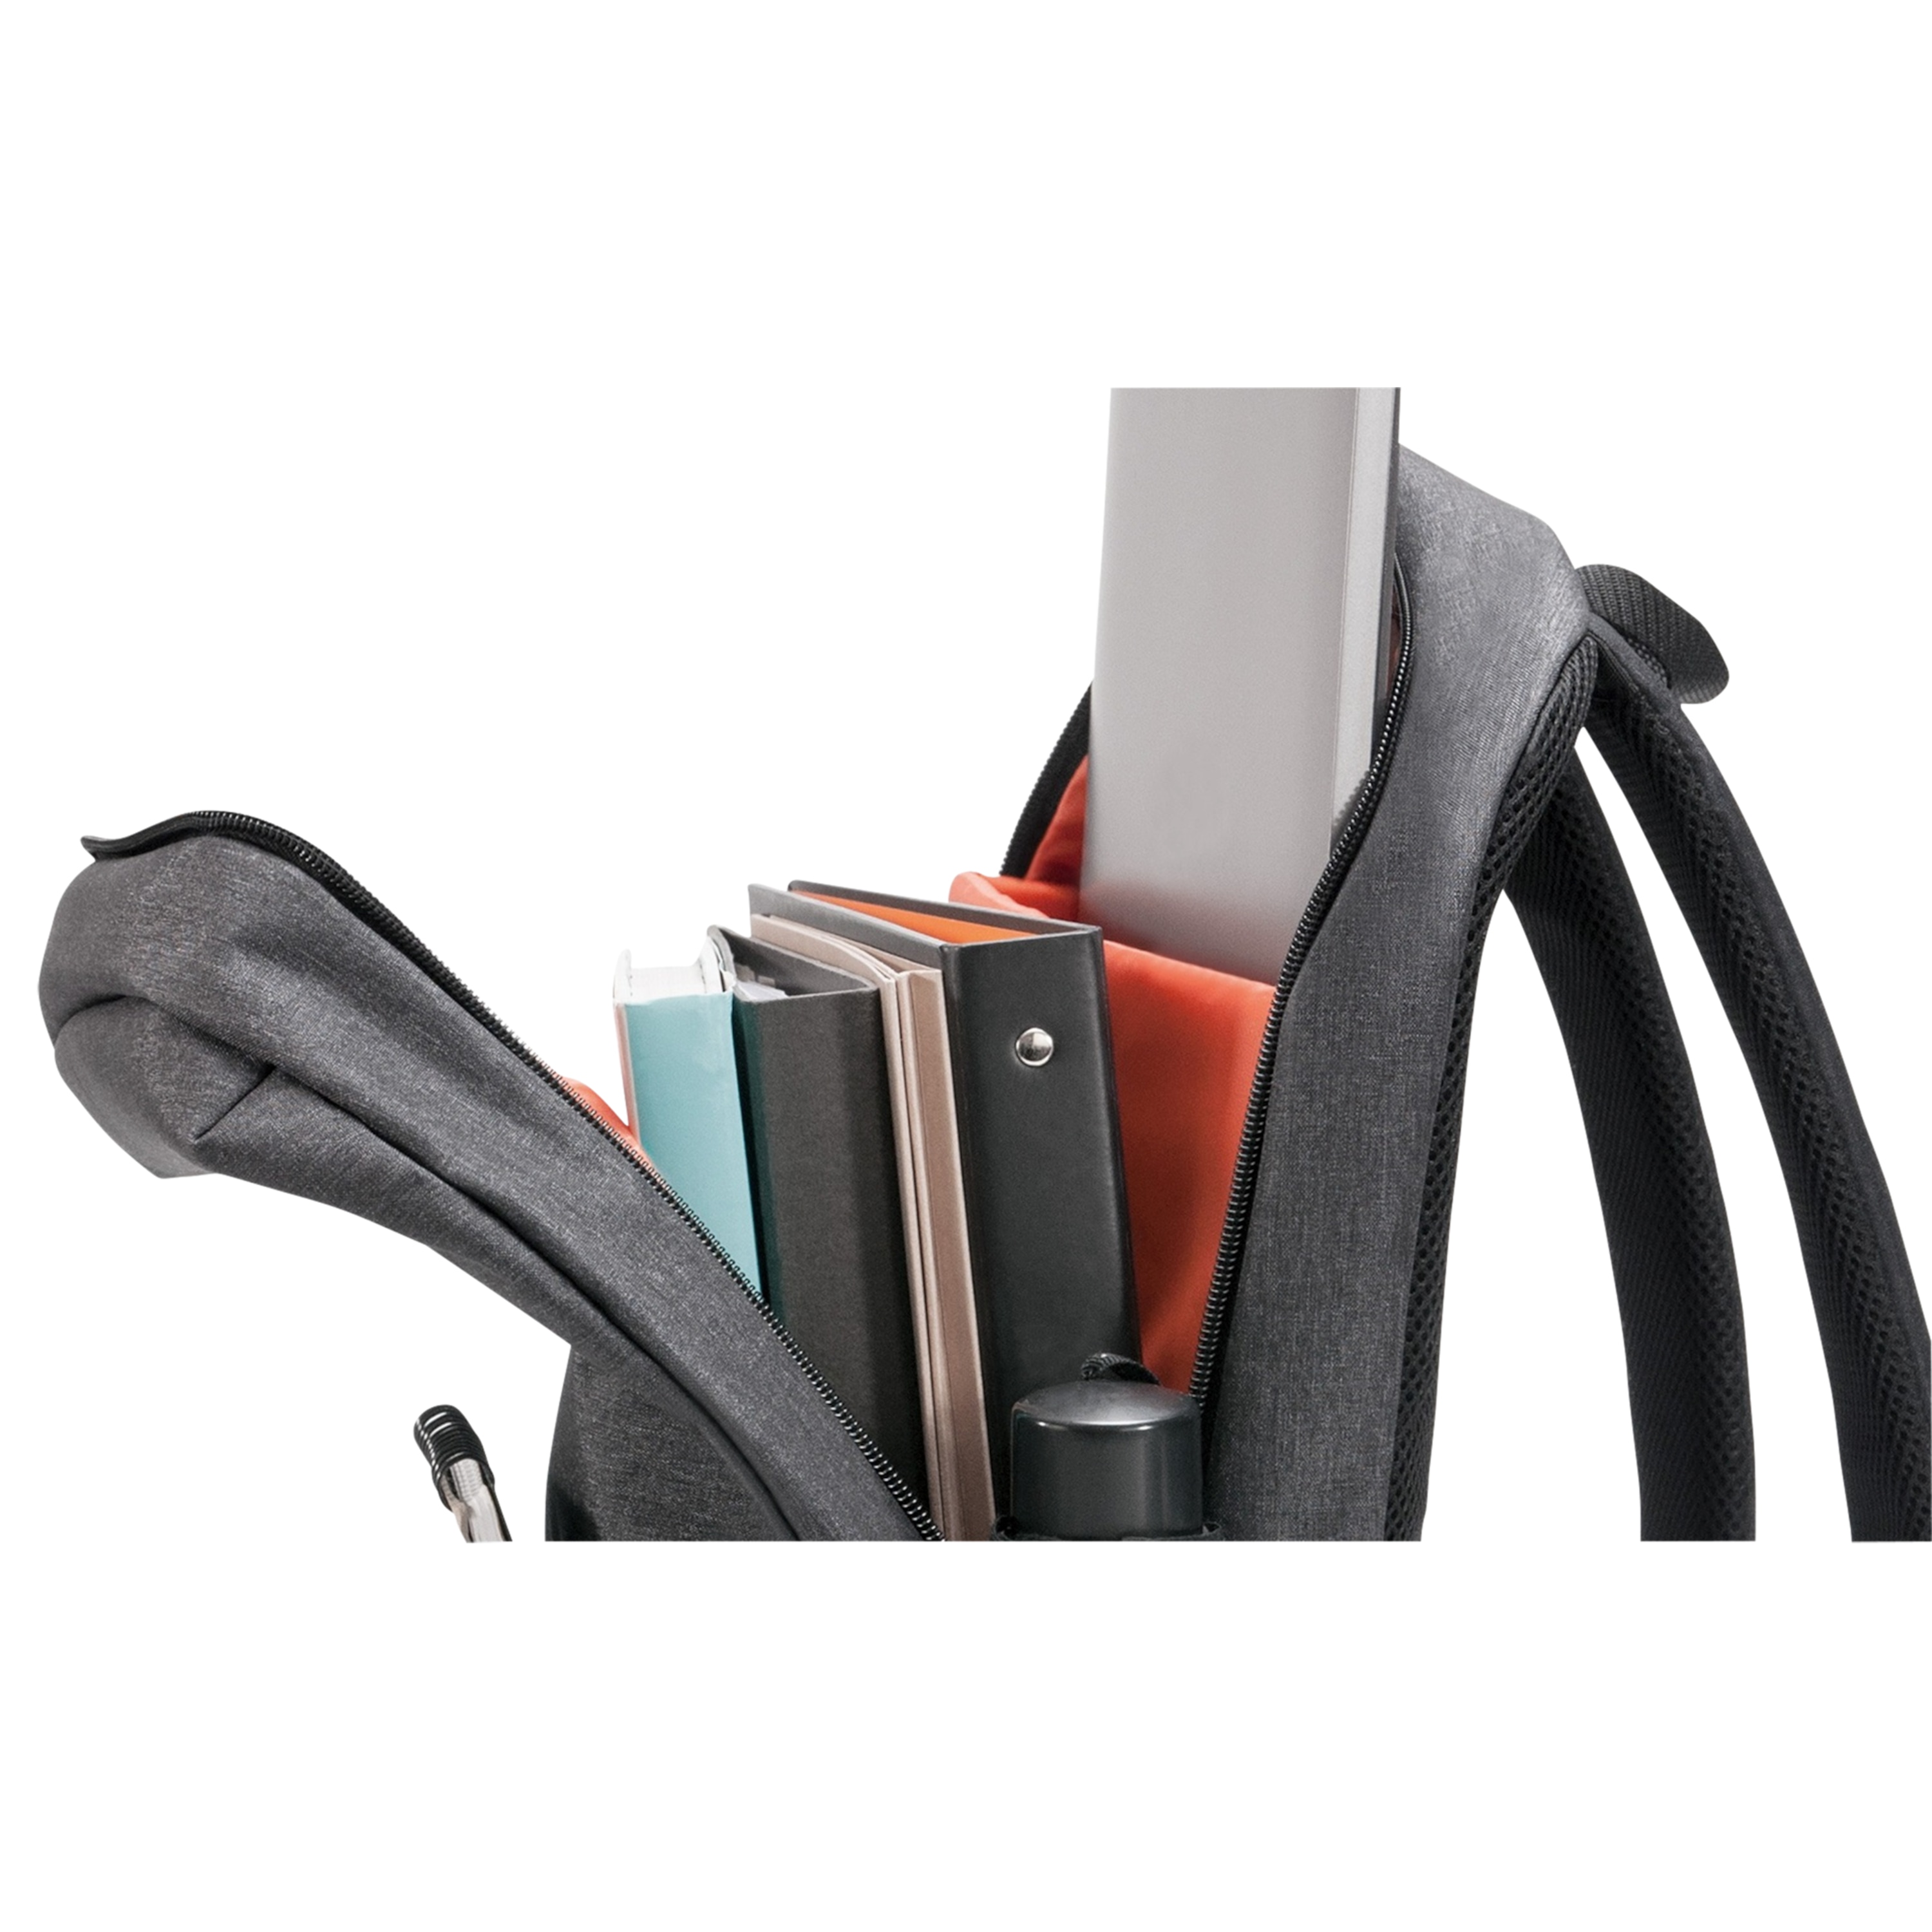 EVERKI 106 Laptop-Rucksack, für Geräte bis 15,6'', spezielle, weich gefüttertes Fach für Laptops und Tablets, langlebige Reißverschlüsse, Kontrast-Futter